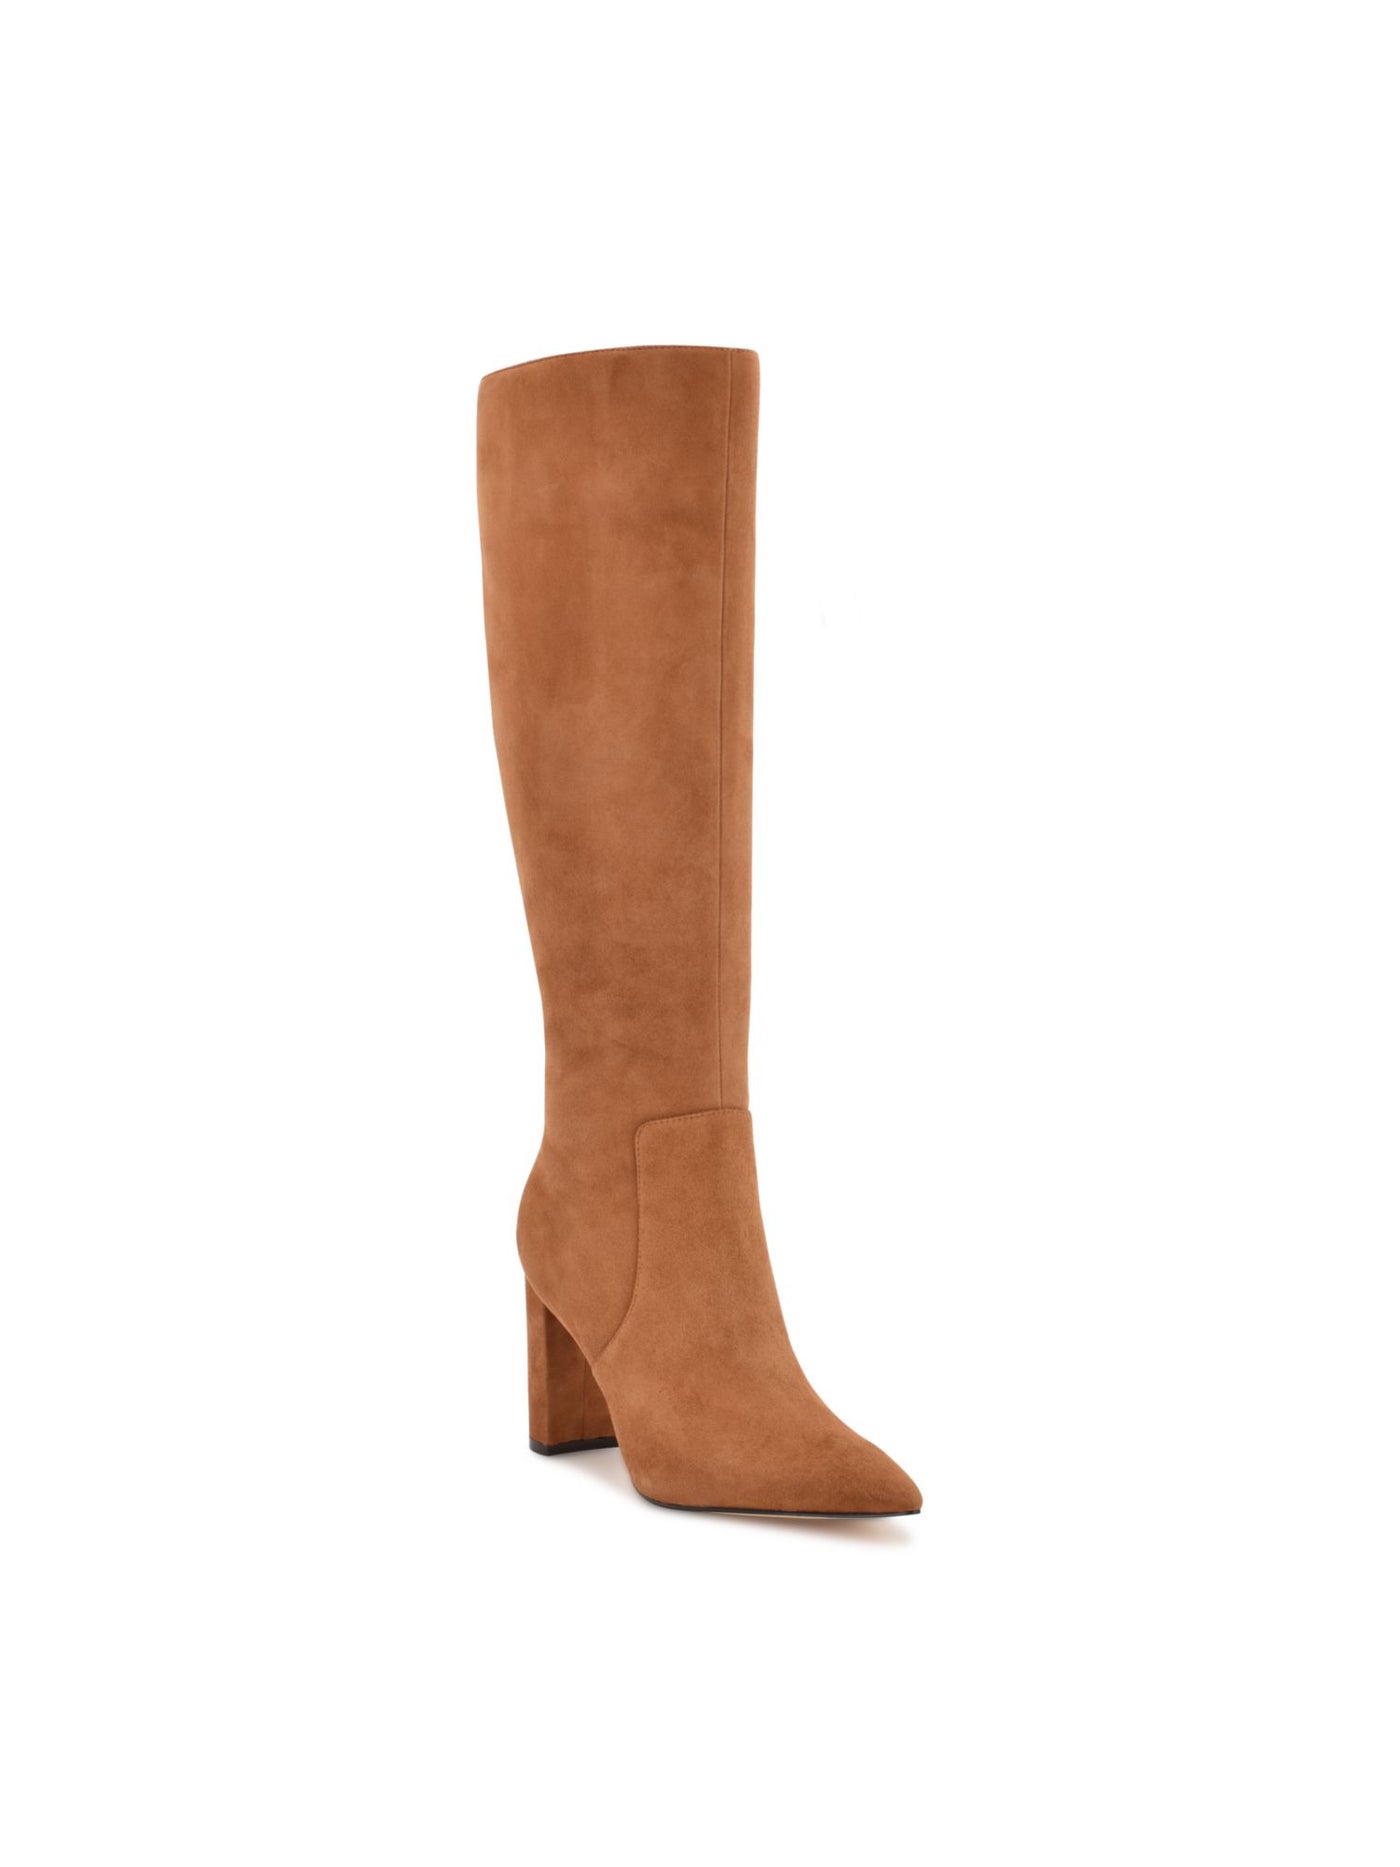 NINE WEST Womens Beige Comfort Danee Pointed Toe Block Heel Zip-Up Leather Dress Boots 9.5 M